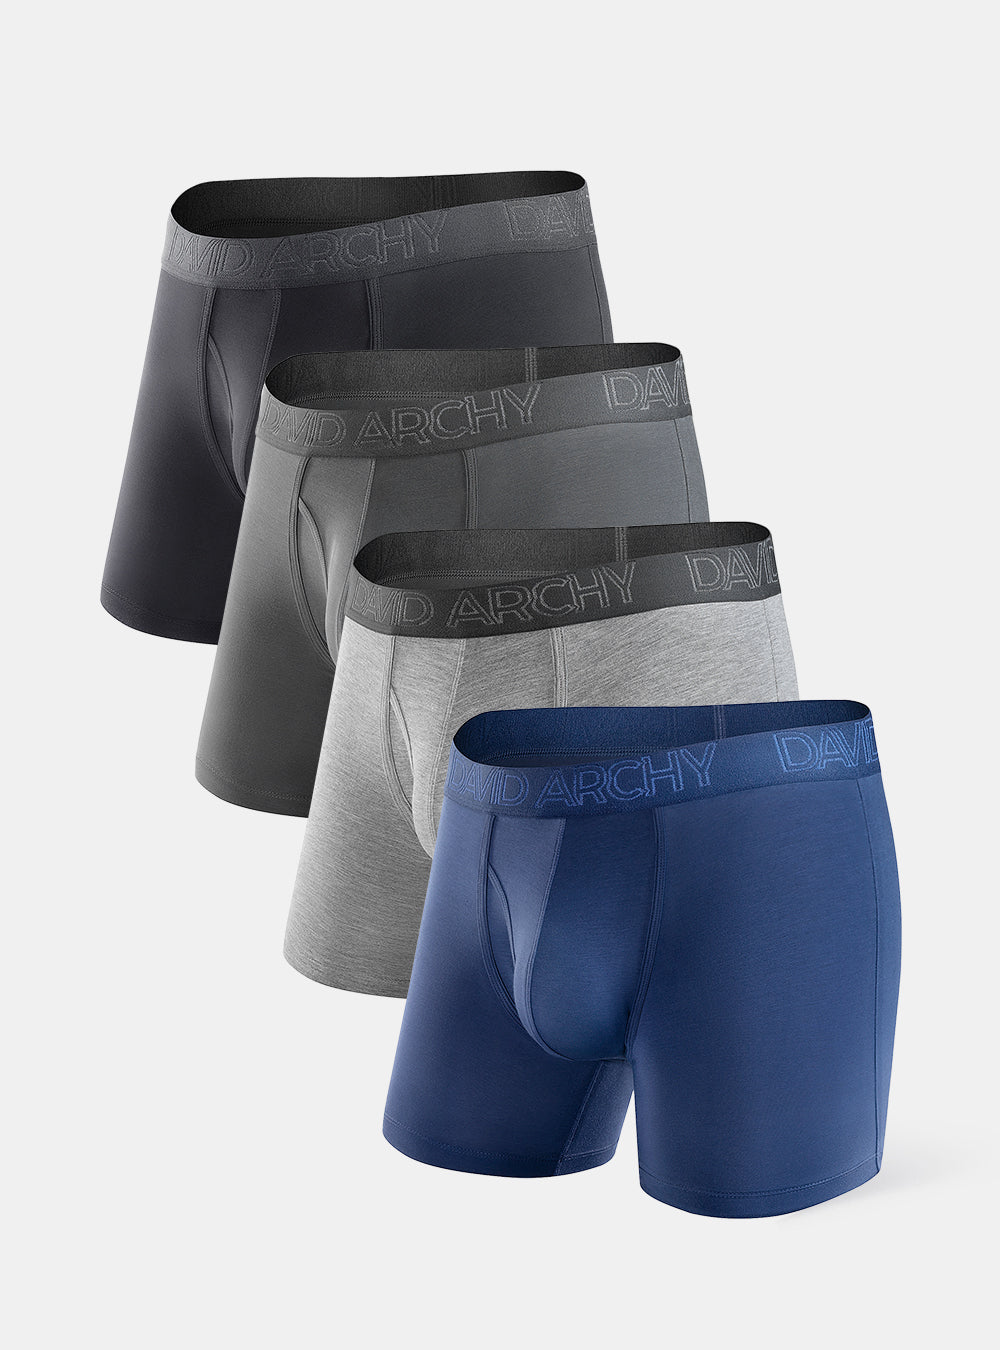 Comfy Designer Men's Underwear – Gent's Underwear – Trunks – Men's Briefs  (4 Pcs) –